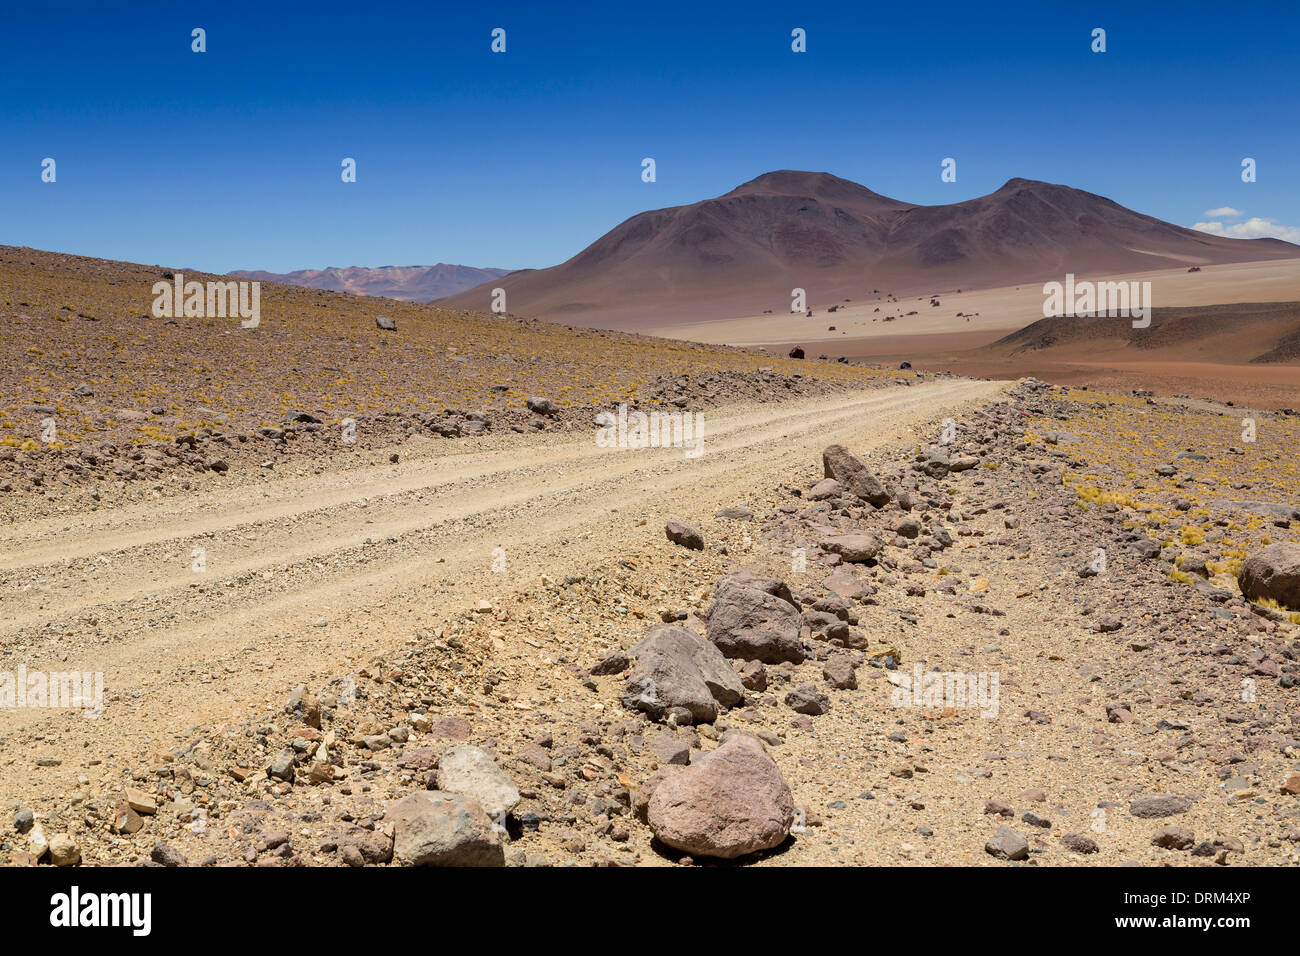 Bolivia, Atacama Desert, Dirt track through Salvador Dali Desert Stock Photo